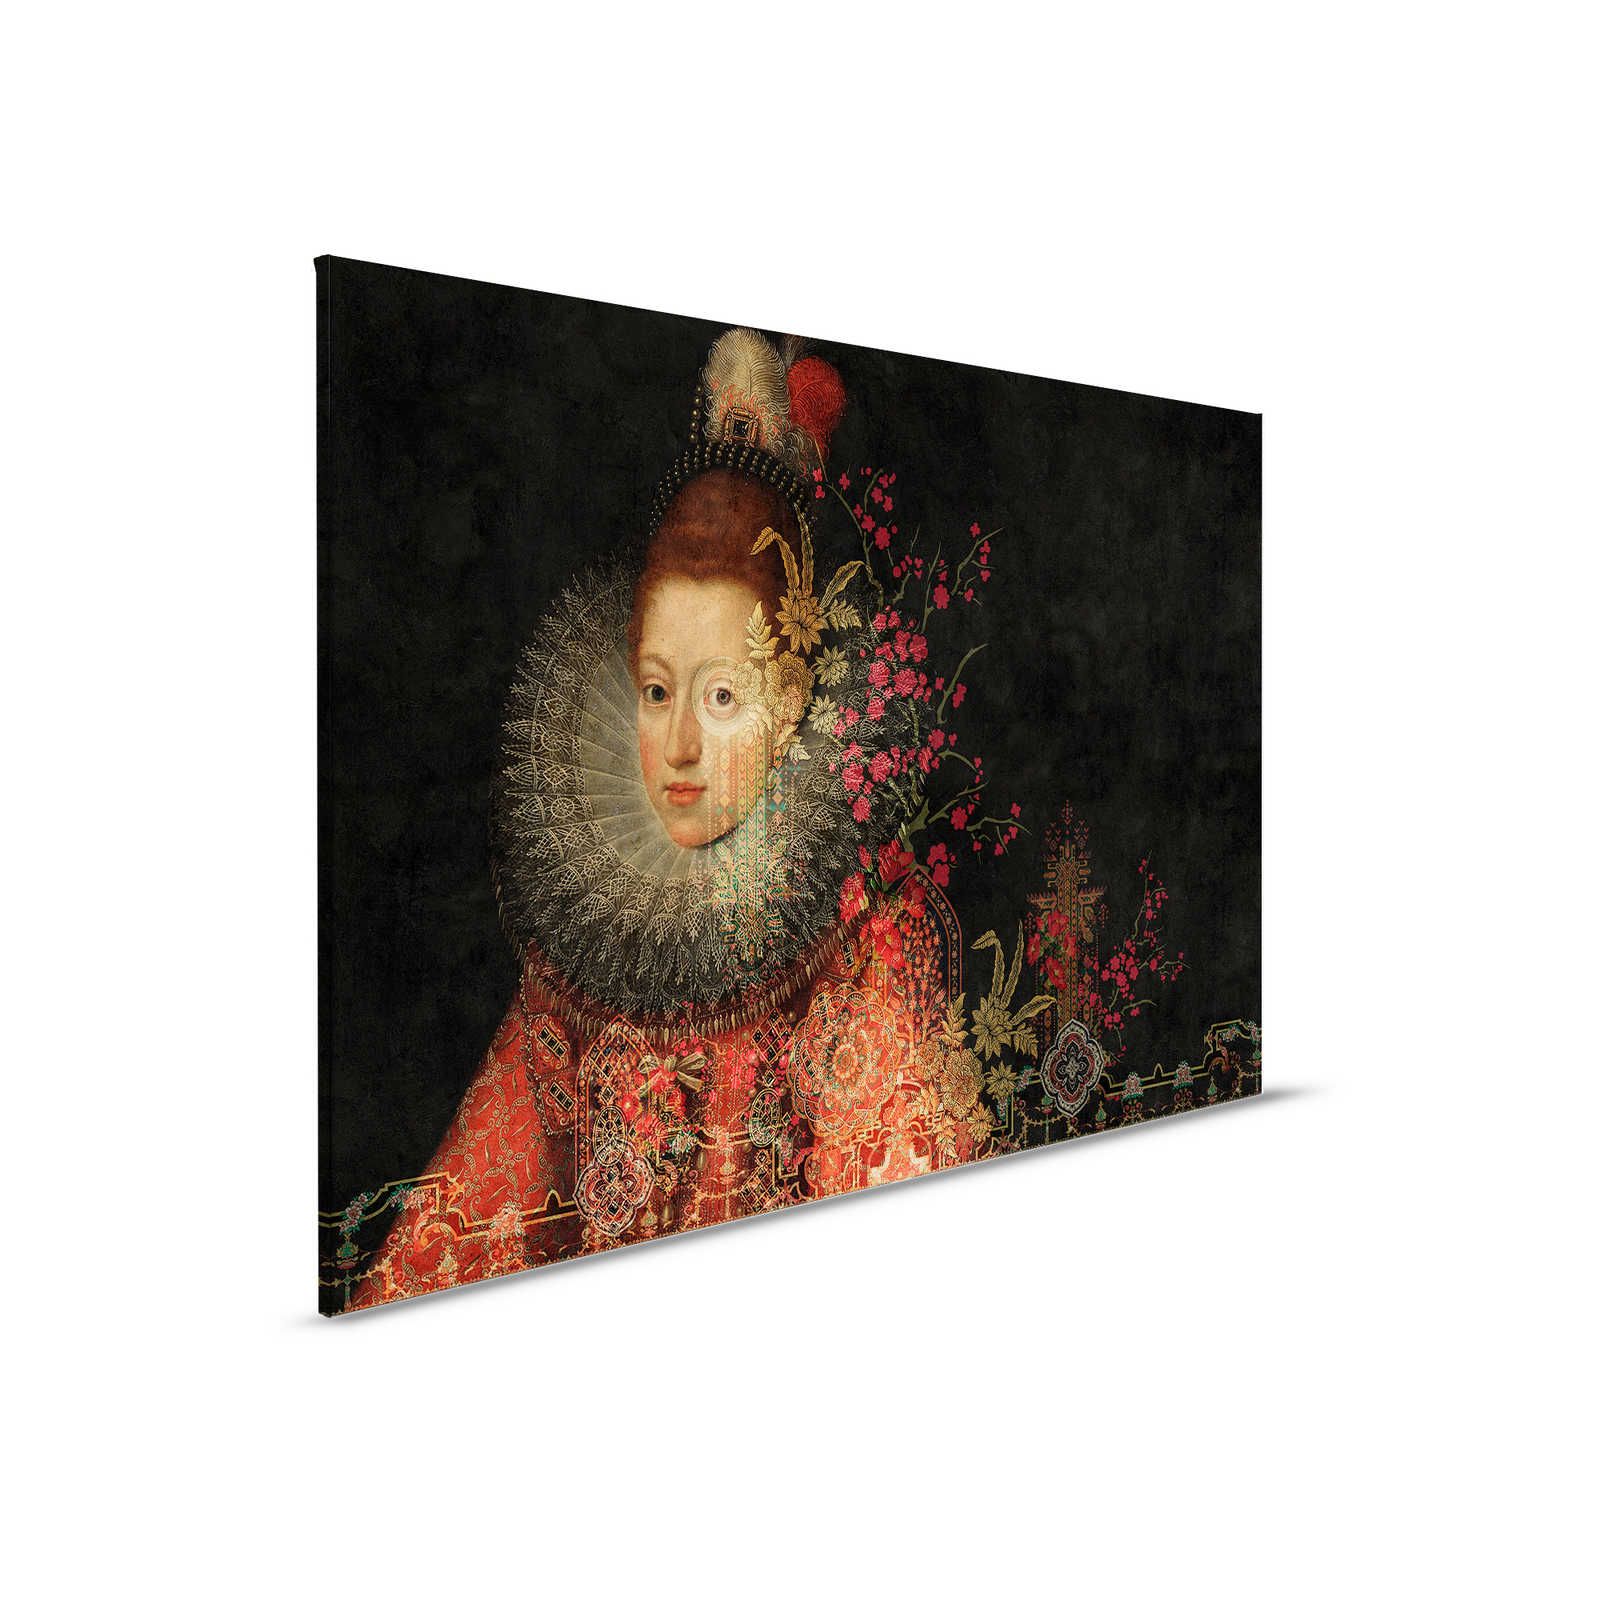         In the Gallery 1 - Leinwandbild Klassik Gemälde & Blumen Grafik – 0,90 m x 0,60 m
    